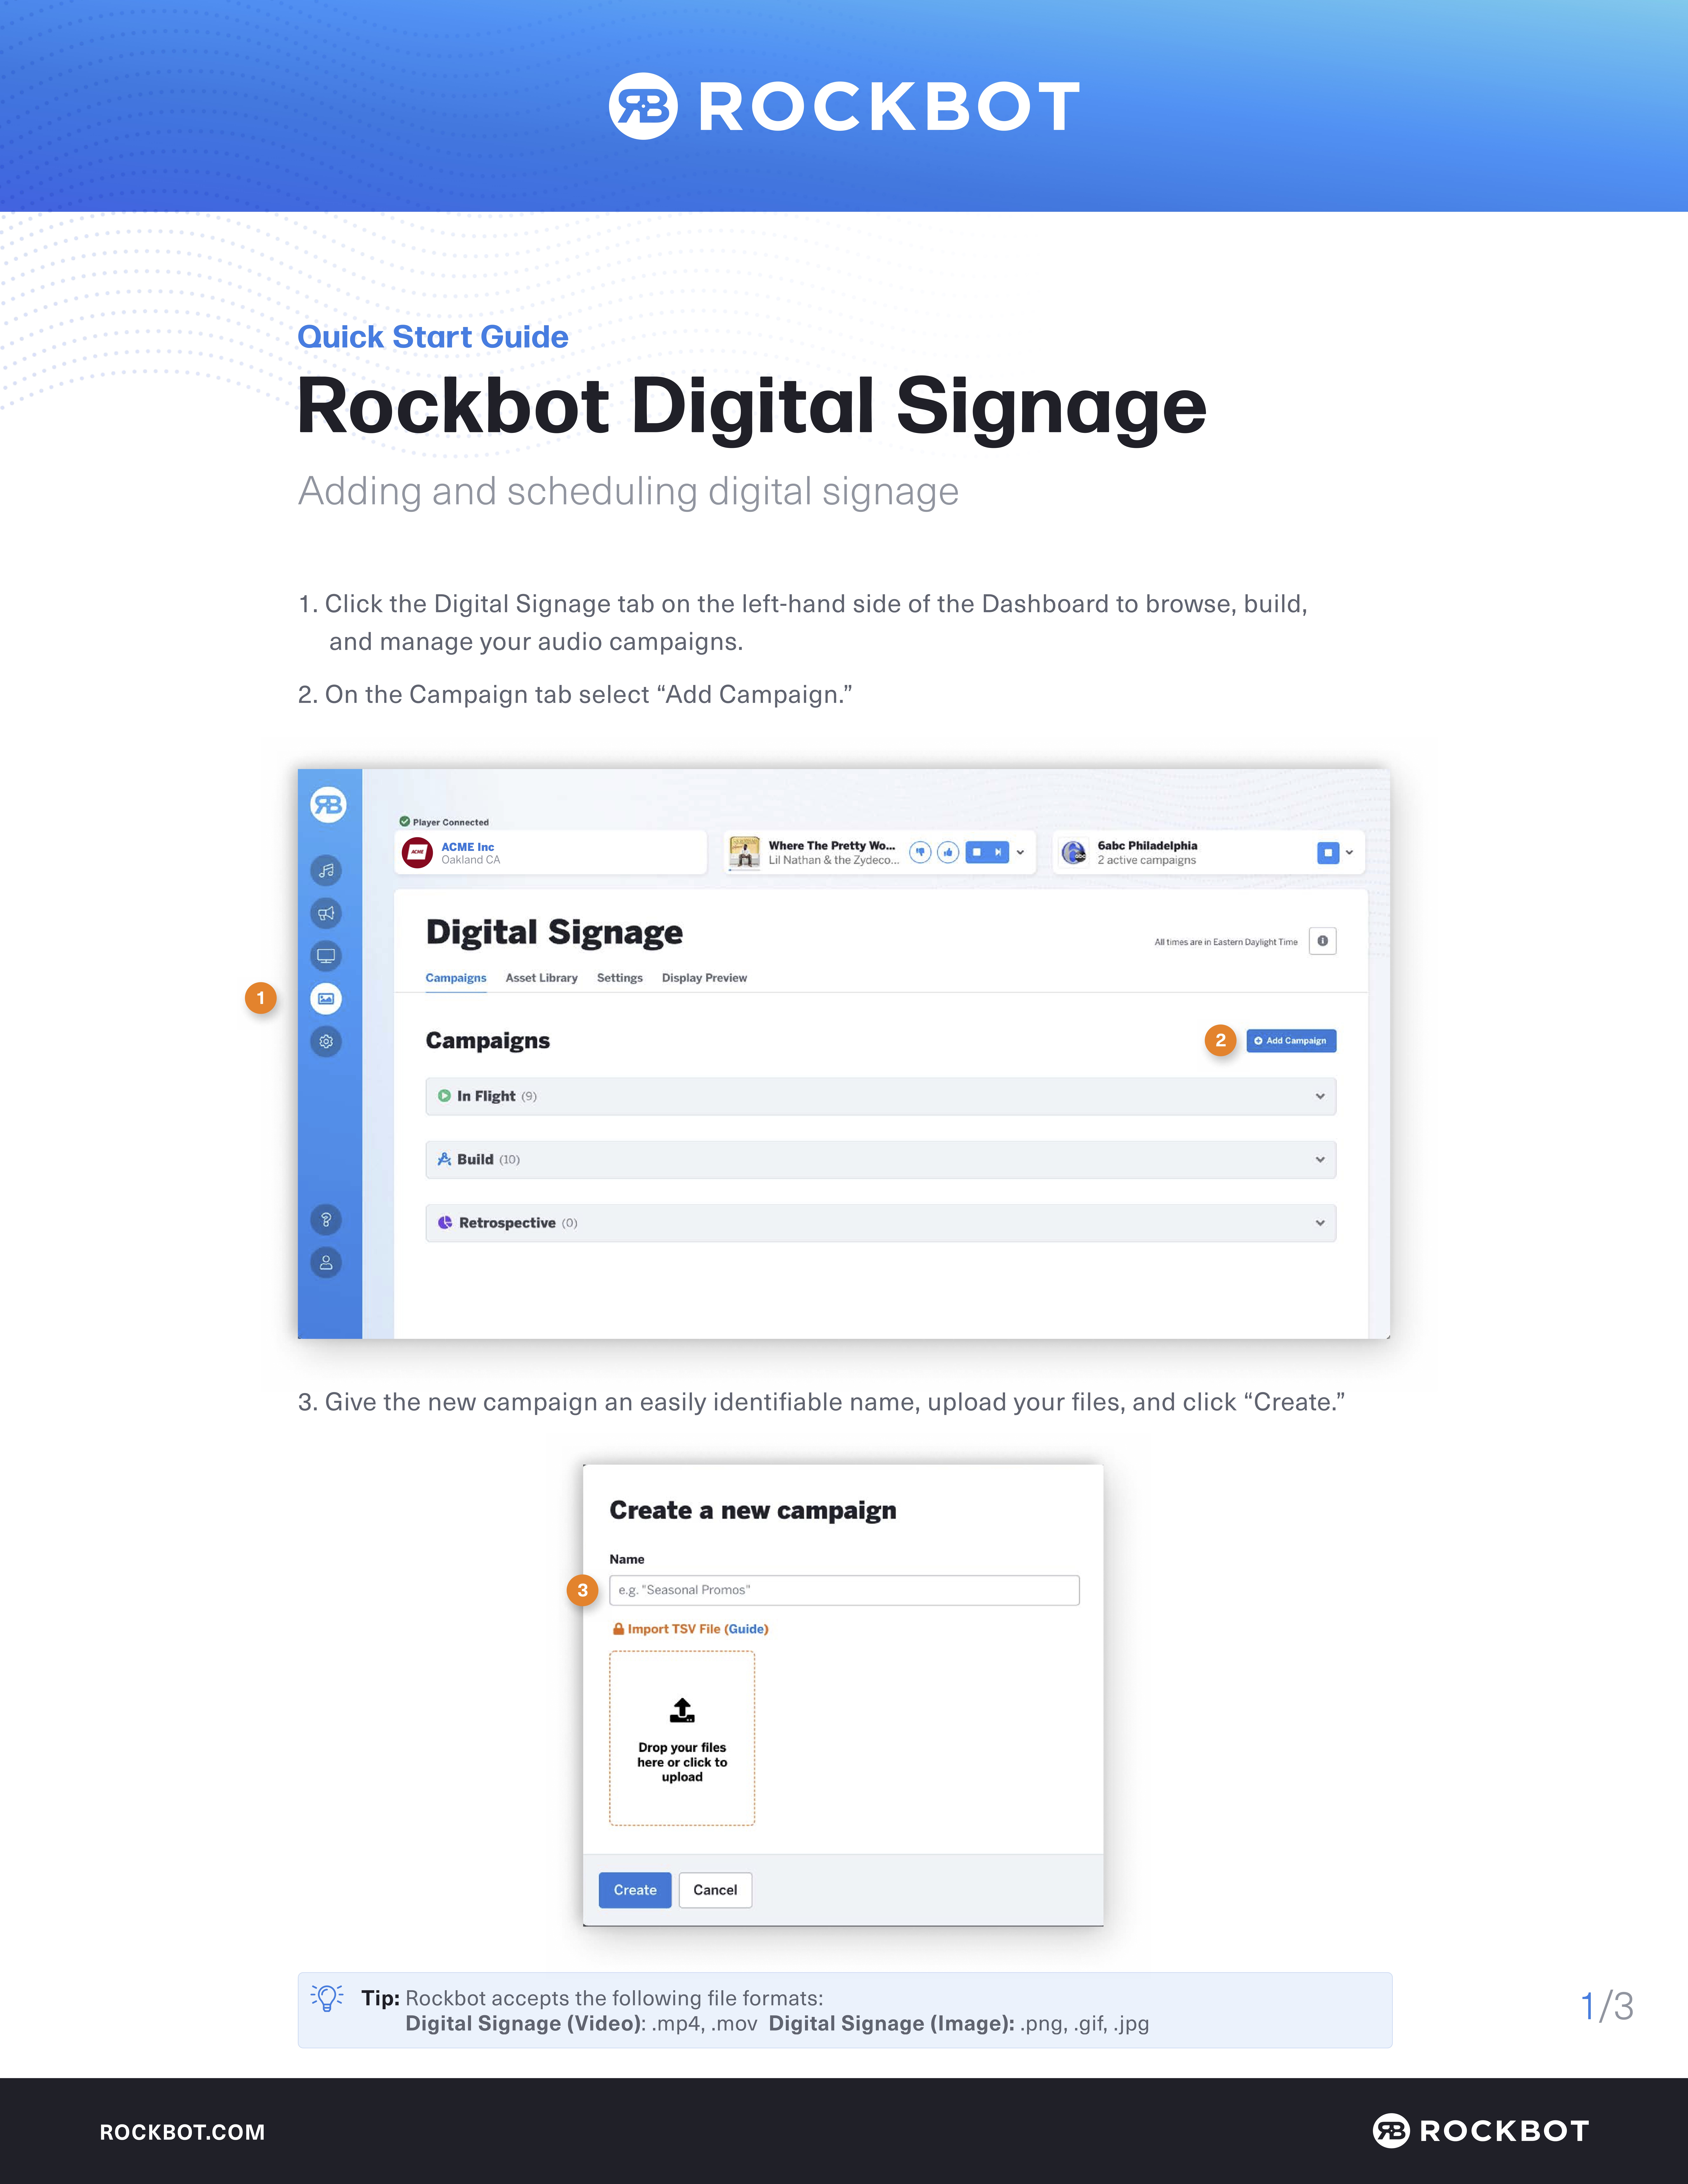 Rockbot_Digital_Signage_Quick_Start_Guide.jpg